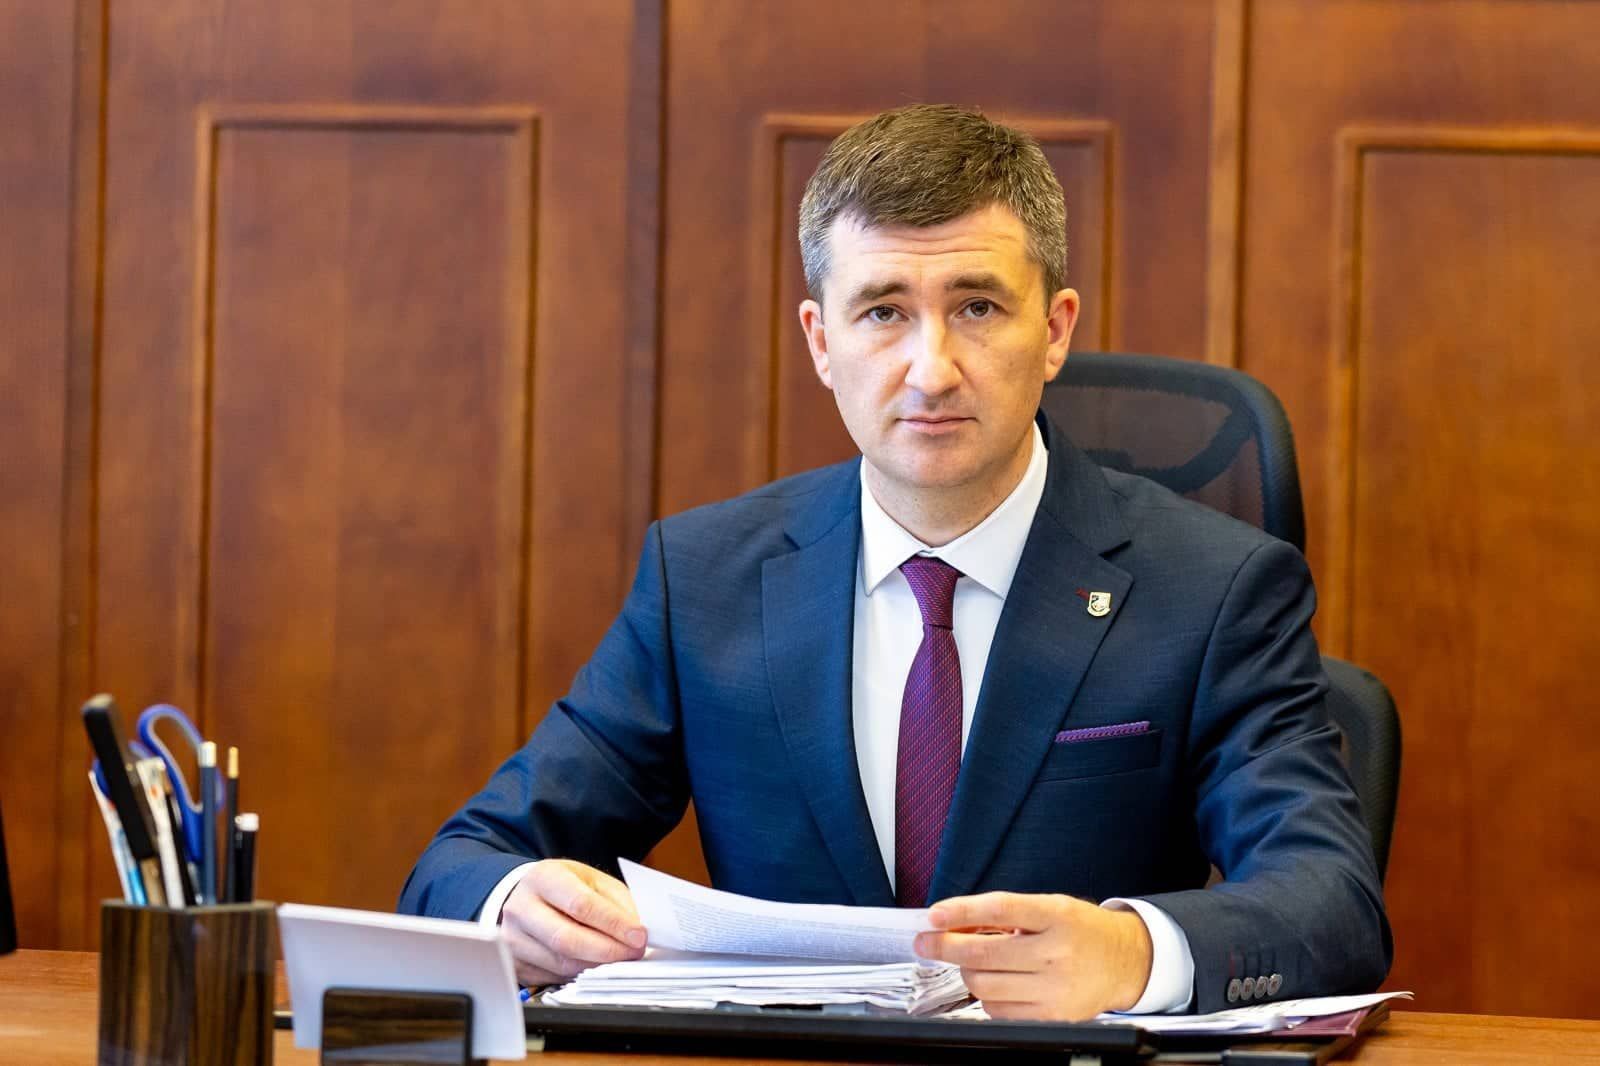 Ion Munteanu trece de la Procuratura Generală la Curtea Supremă de Justiție! CSM a aprobat raportul Comisiei Vetting